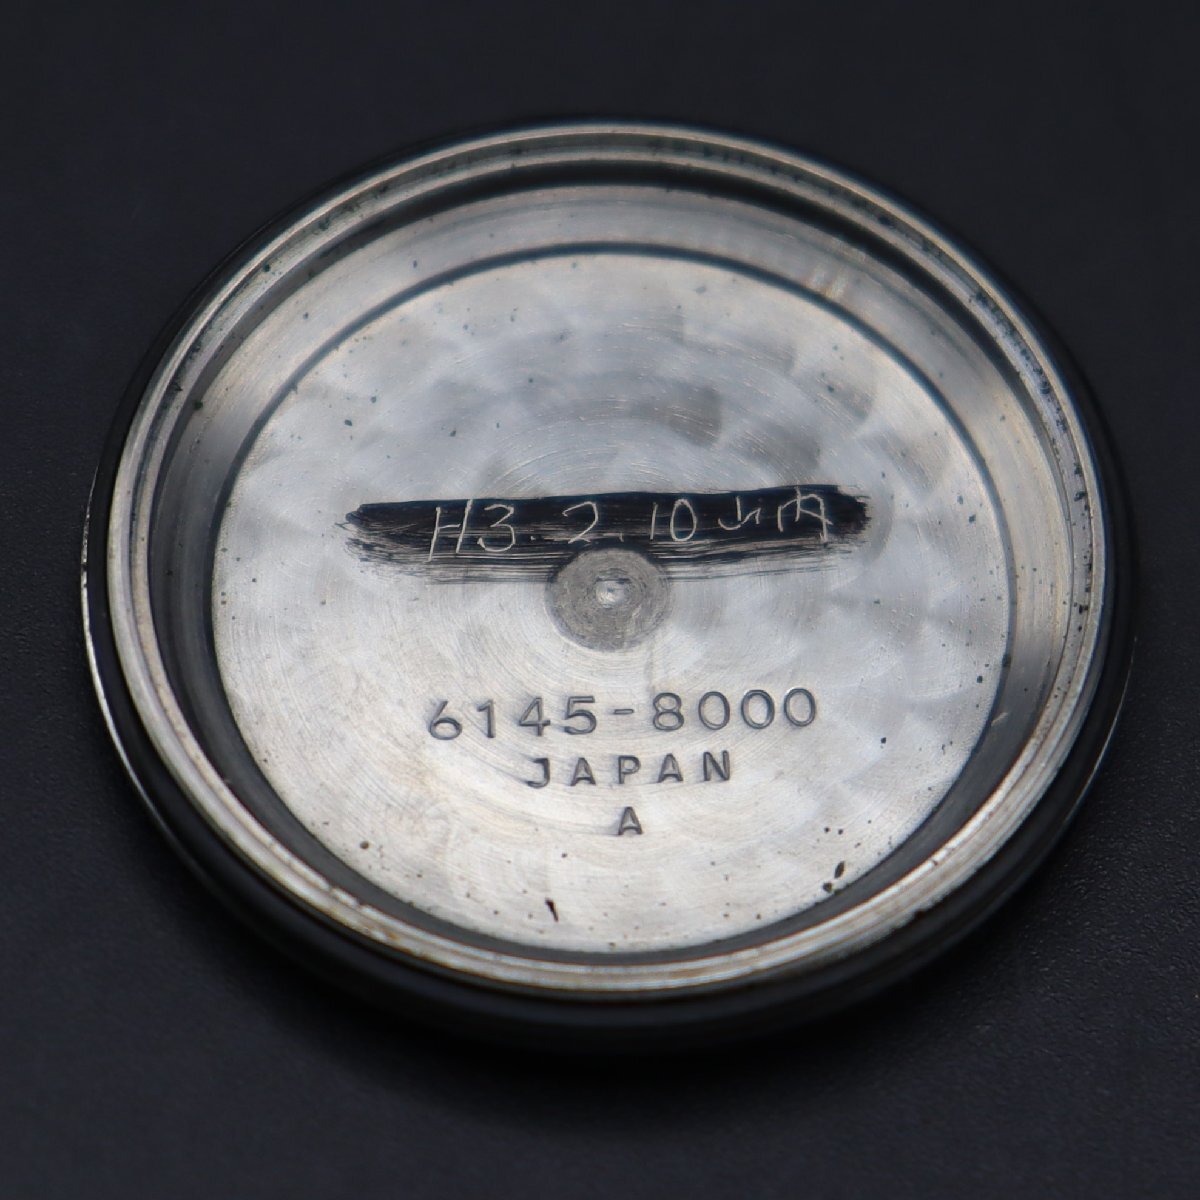 SEIKO GS HI-BEAT 36000 セイコー グランドセイコー 6145-8000 自動巻き デイト GSメダリオン 文字盤カスタム 1969年製 諏訪 メンズ腕時計の画像8